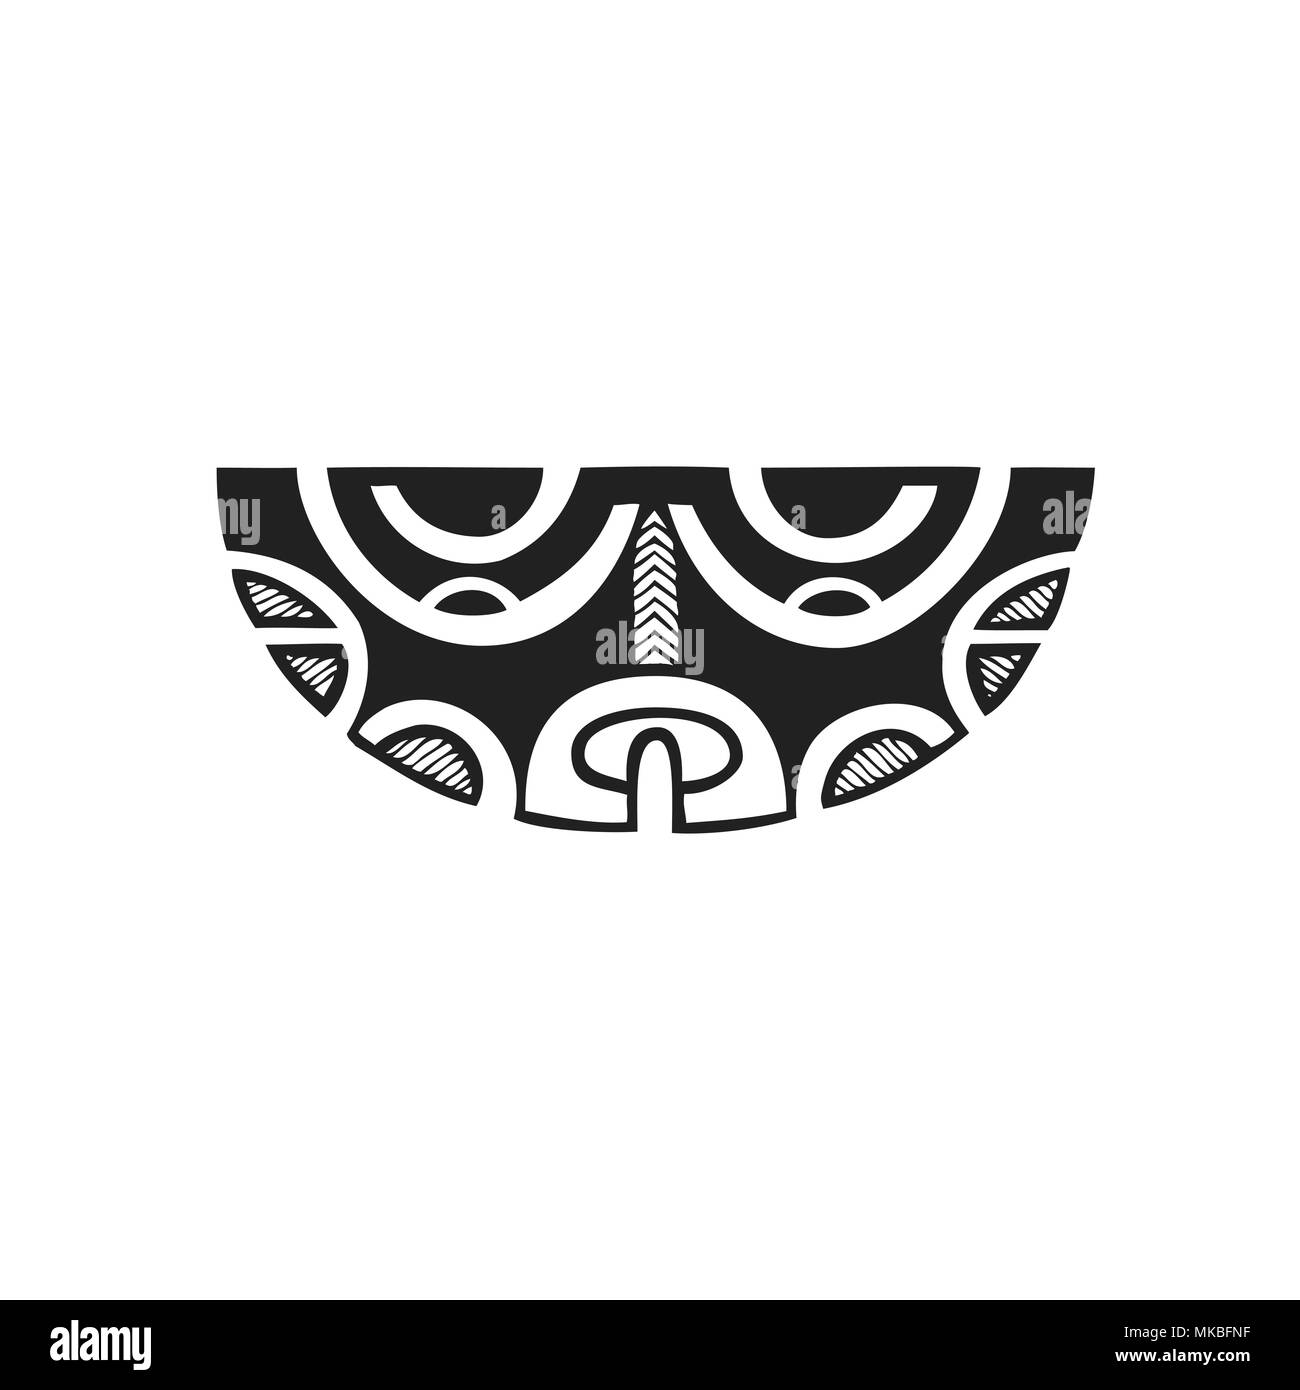 Vecteur d'encre monochrome noir indigènes à la main art populaire polynésien mythologique symbole Mata Hoata oeil brillant Tiki illustration isolé zone blanche Illustration de Vecteur